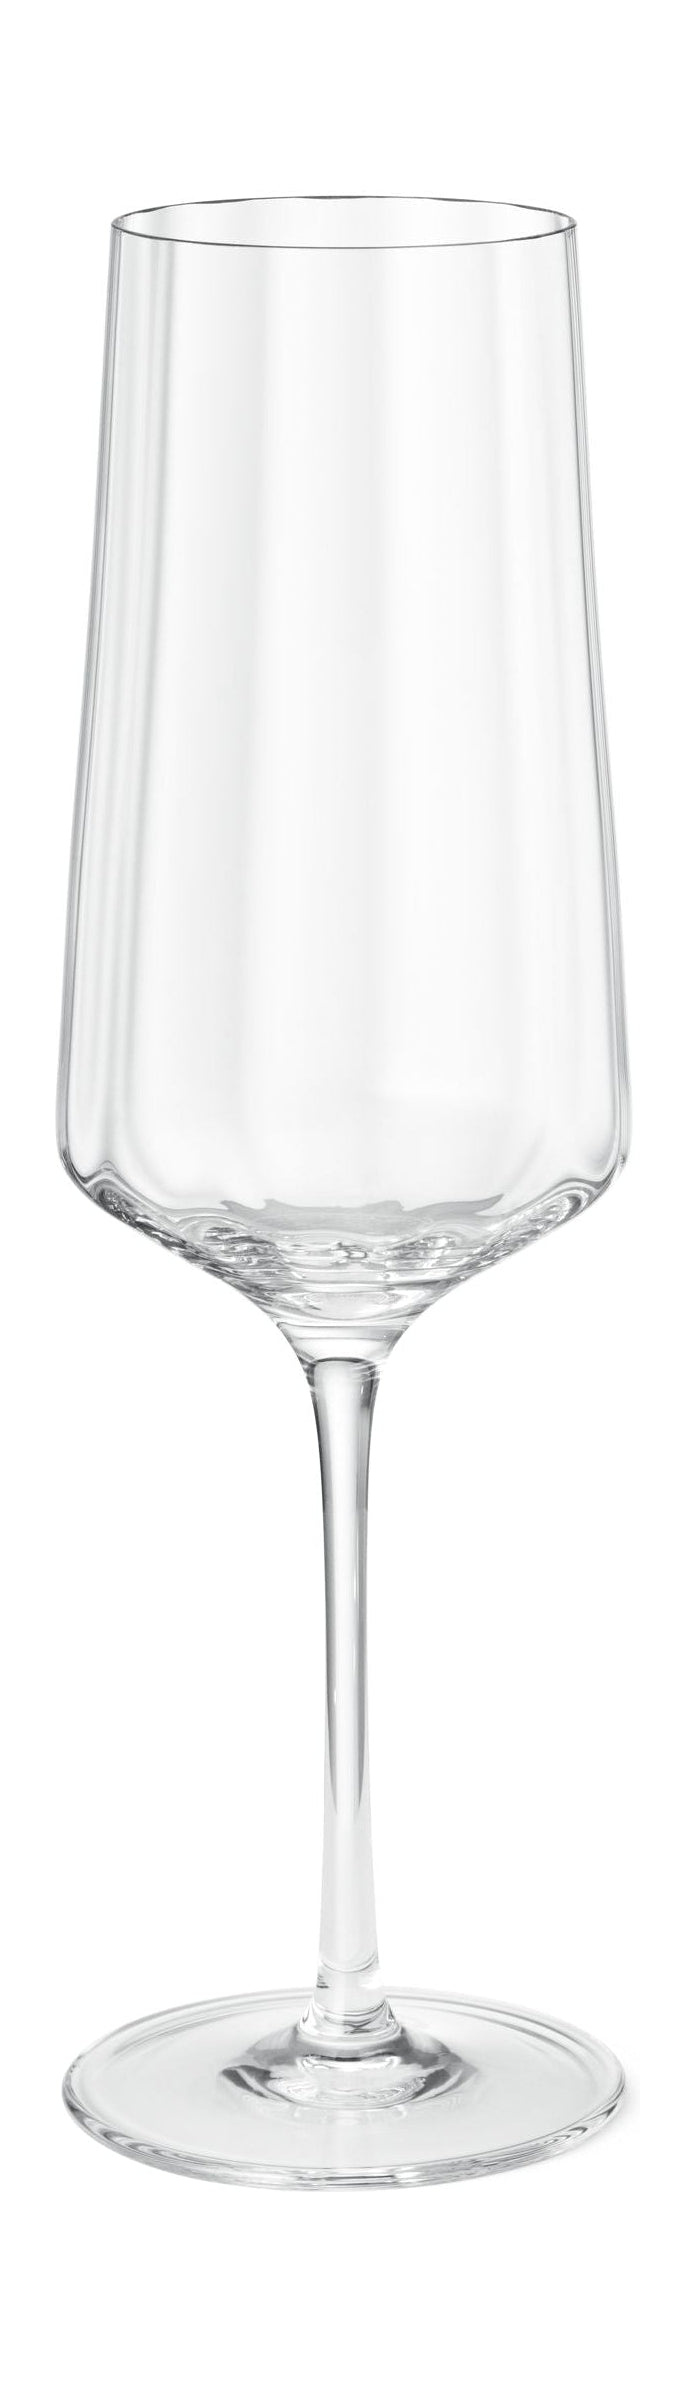 Georg Jensen Bernadotte Champagneglas 27 cl 6 Stk.